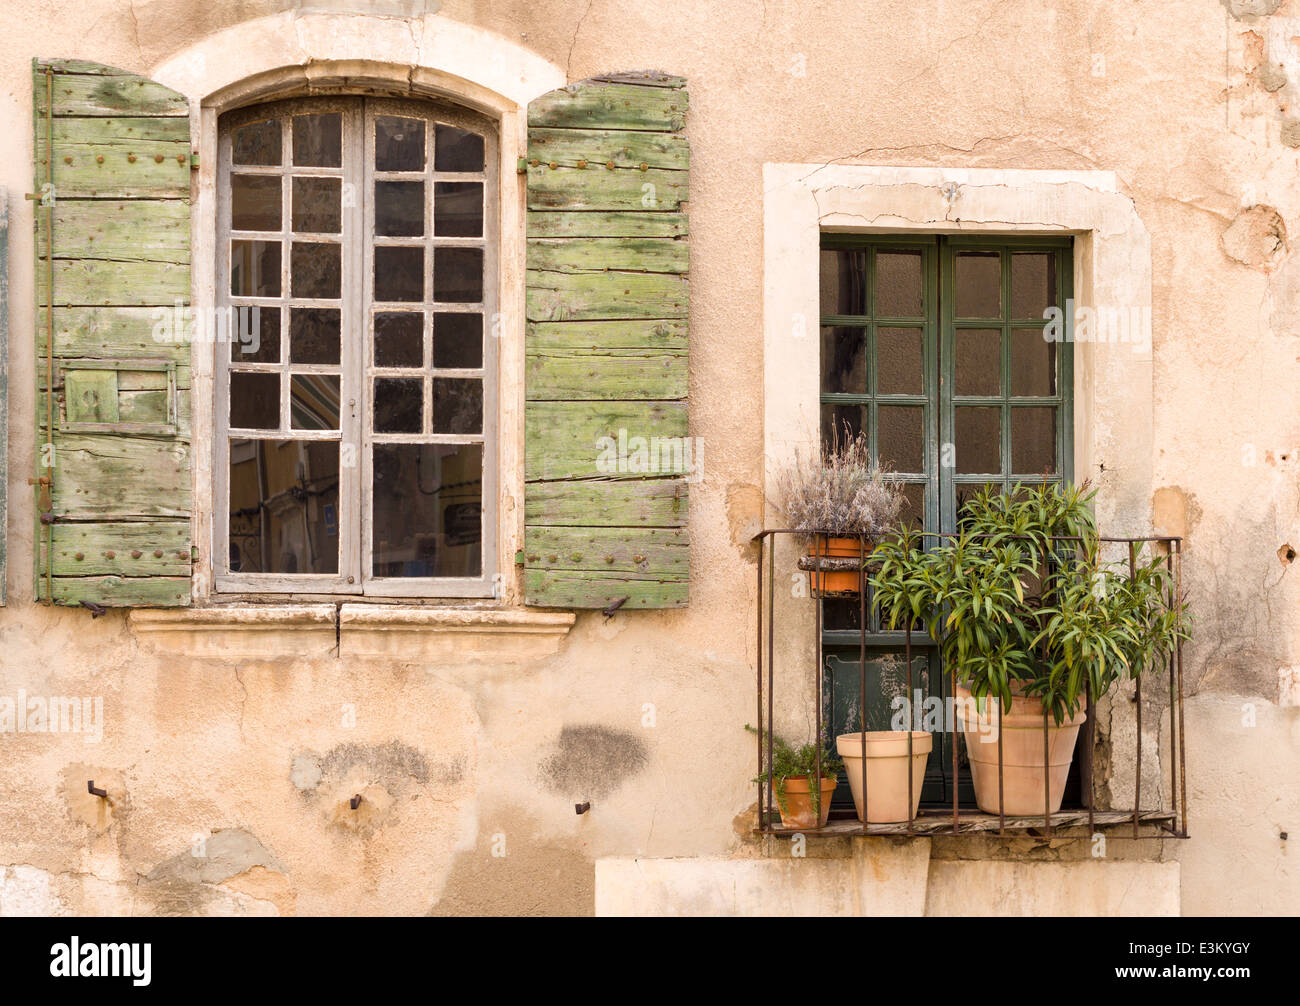 Détail du mur d'une maison dans un village provençal. Fenêtre, balcon et rugueux mur en stuc. village typique maison en Provence Banque D'Images